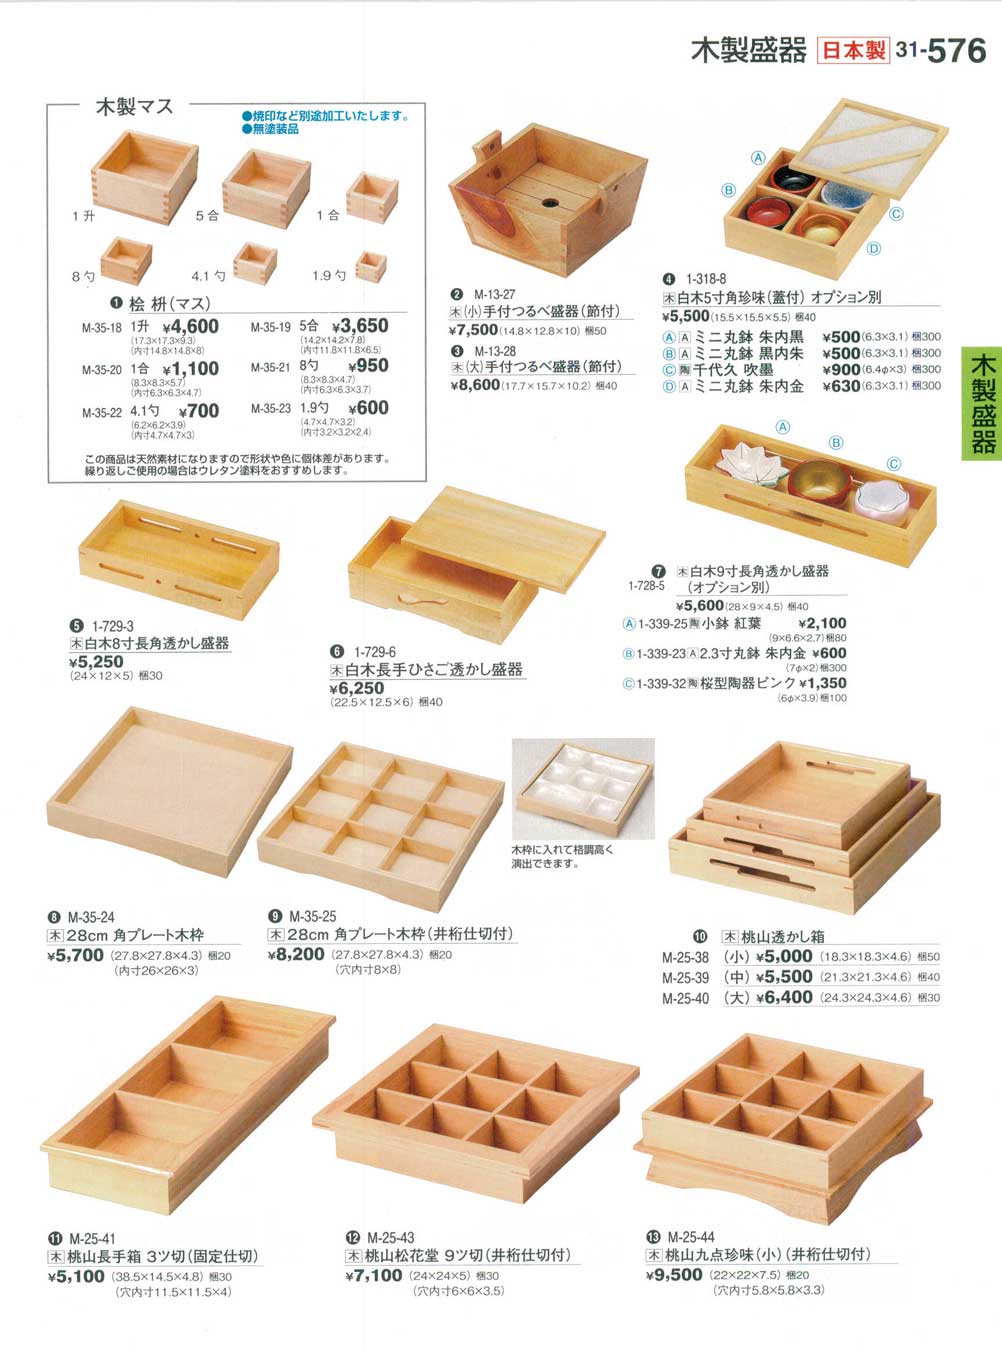 食器 木製盛器Wooden Plates 割烹漆器３１－576ページ